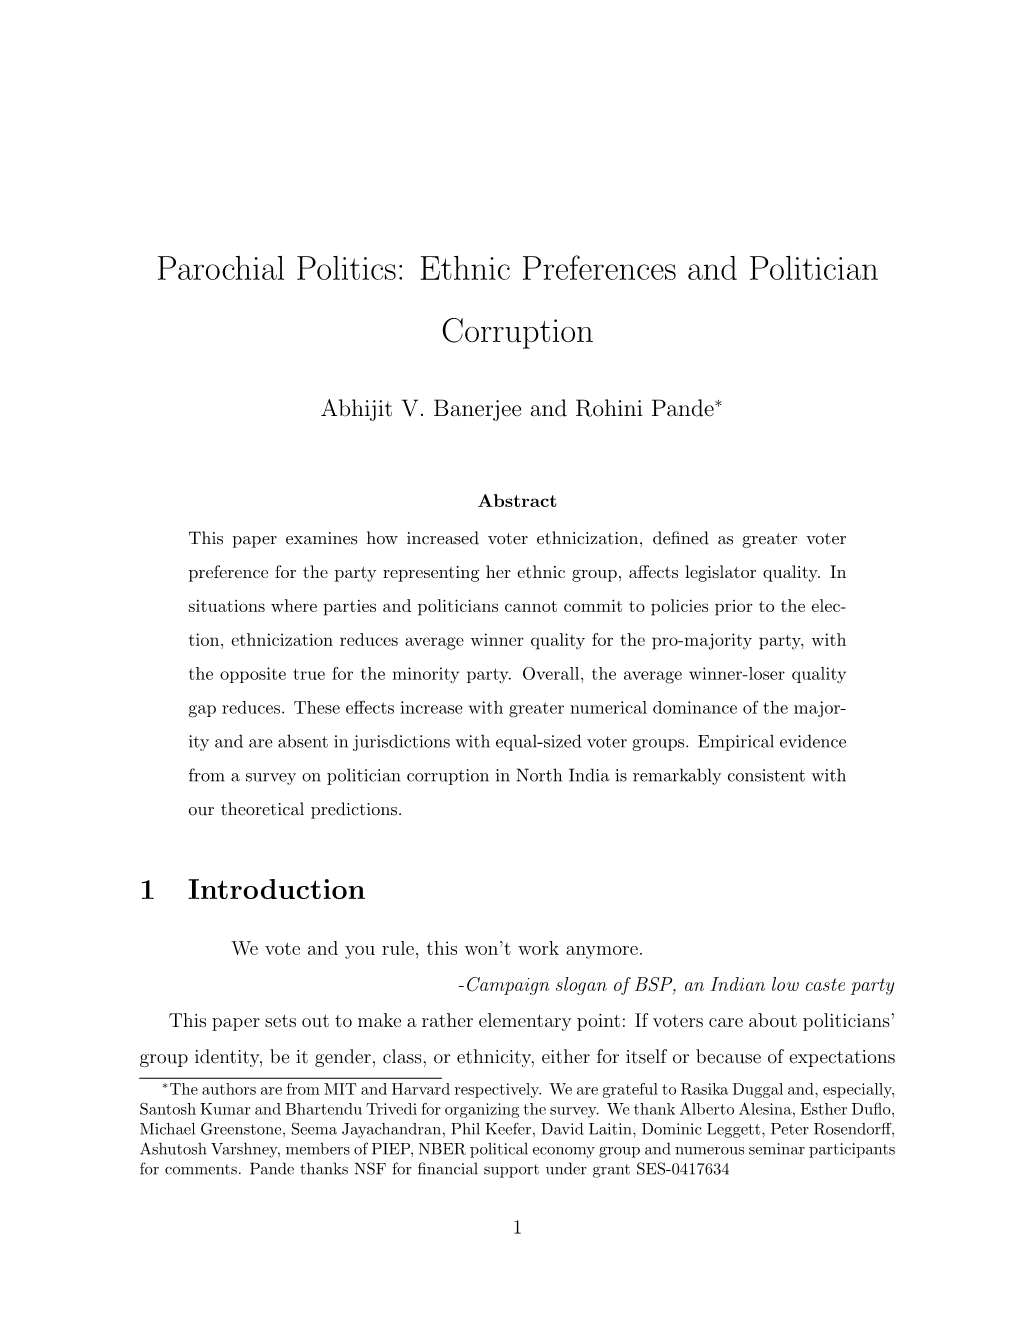 Parochial Politics: Ethnic Preferences and Politician Corruption